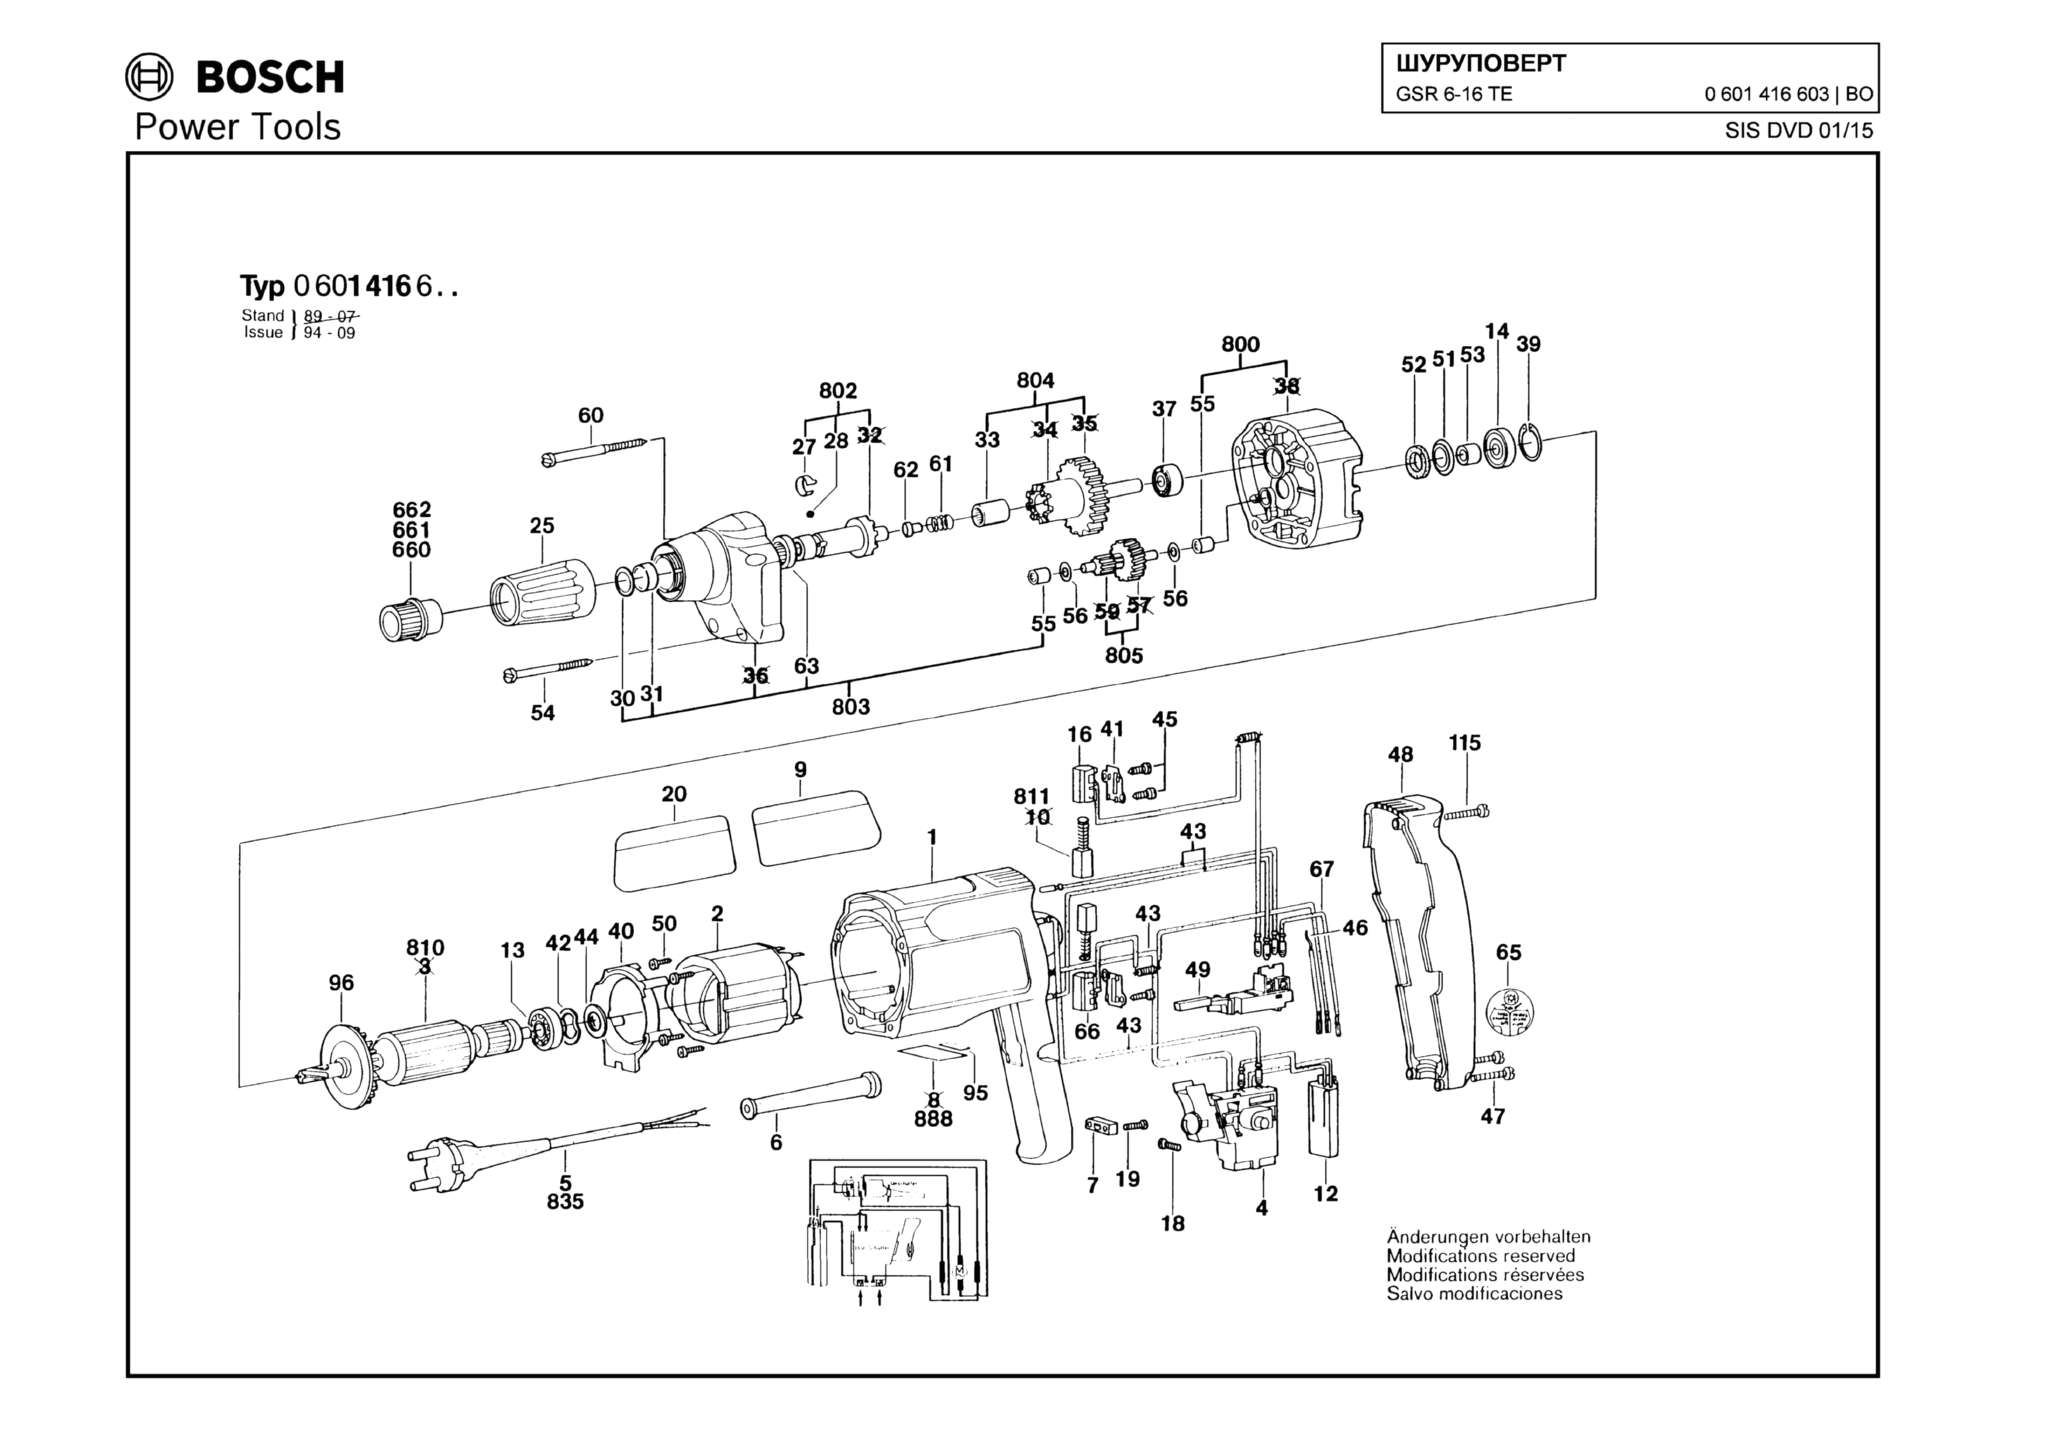 Запчасти, схема и деталировка Bosch GSR 6-16 TE (ТИП 0601416603)